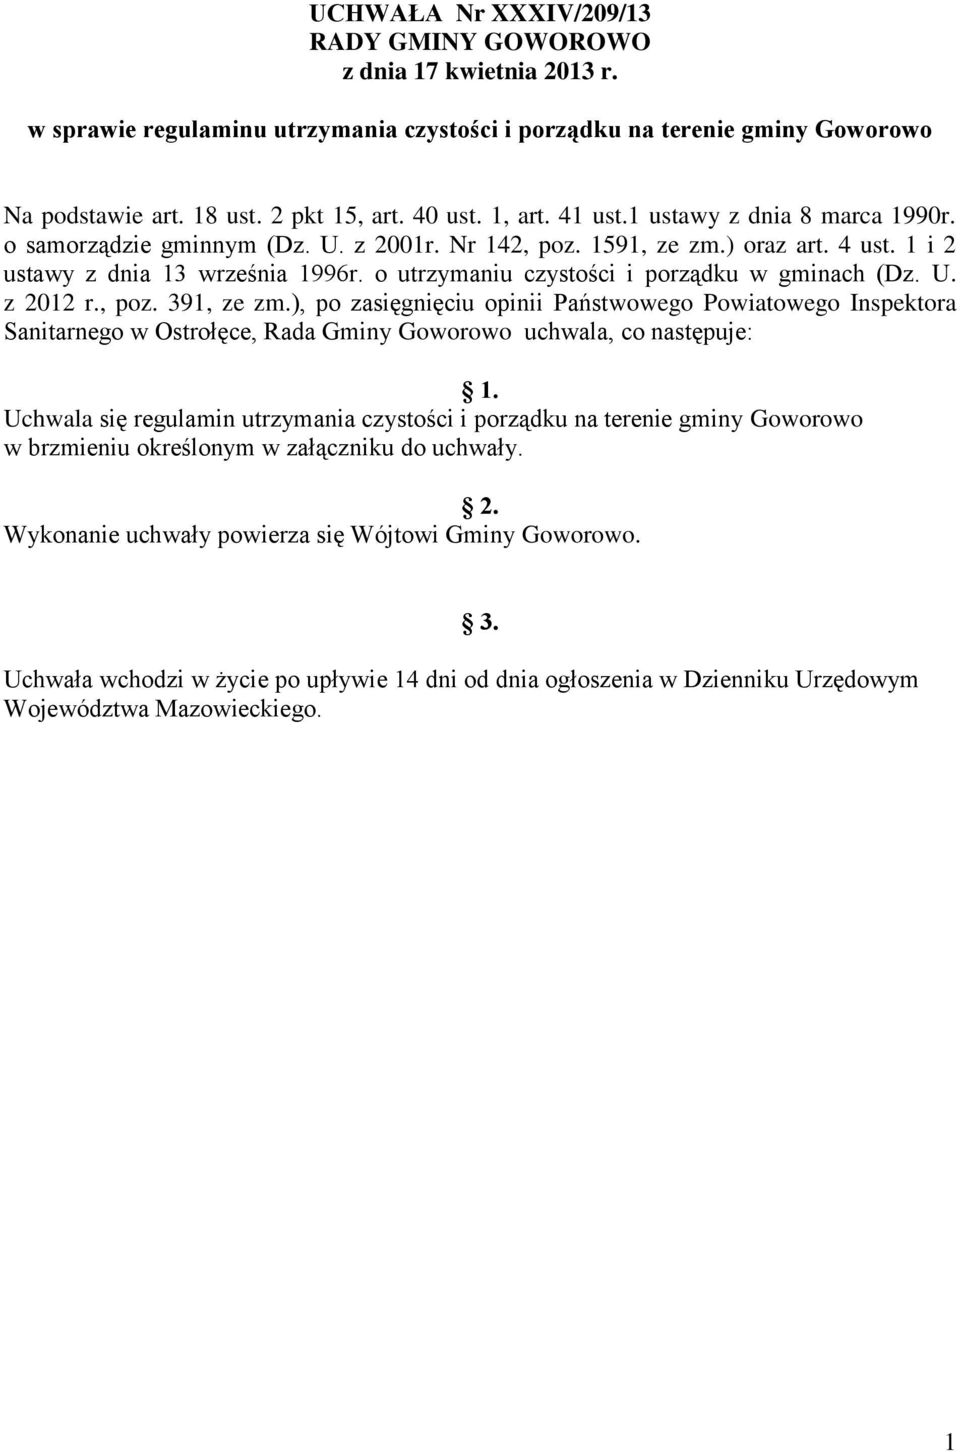 o utrzymaniu czystości i porządku w gminach (Dz. U. z 2012 r., poz. 391, ze zm.